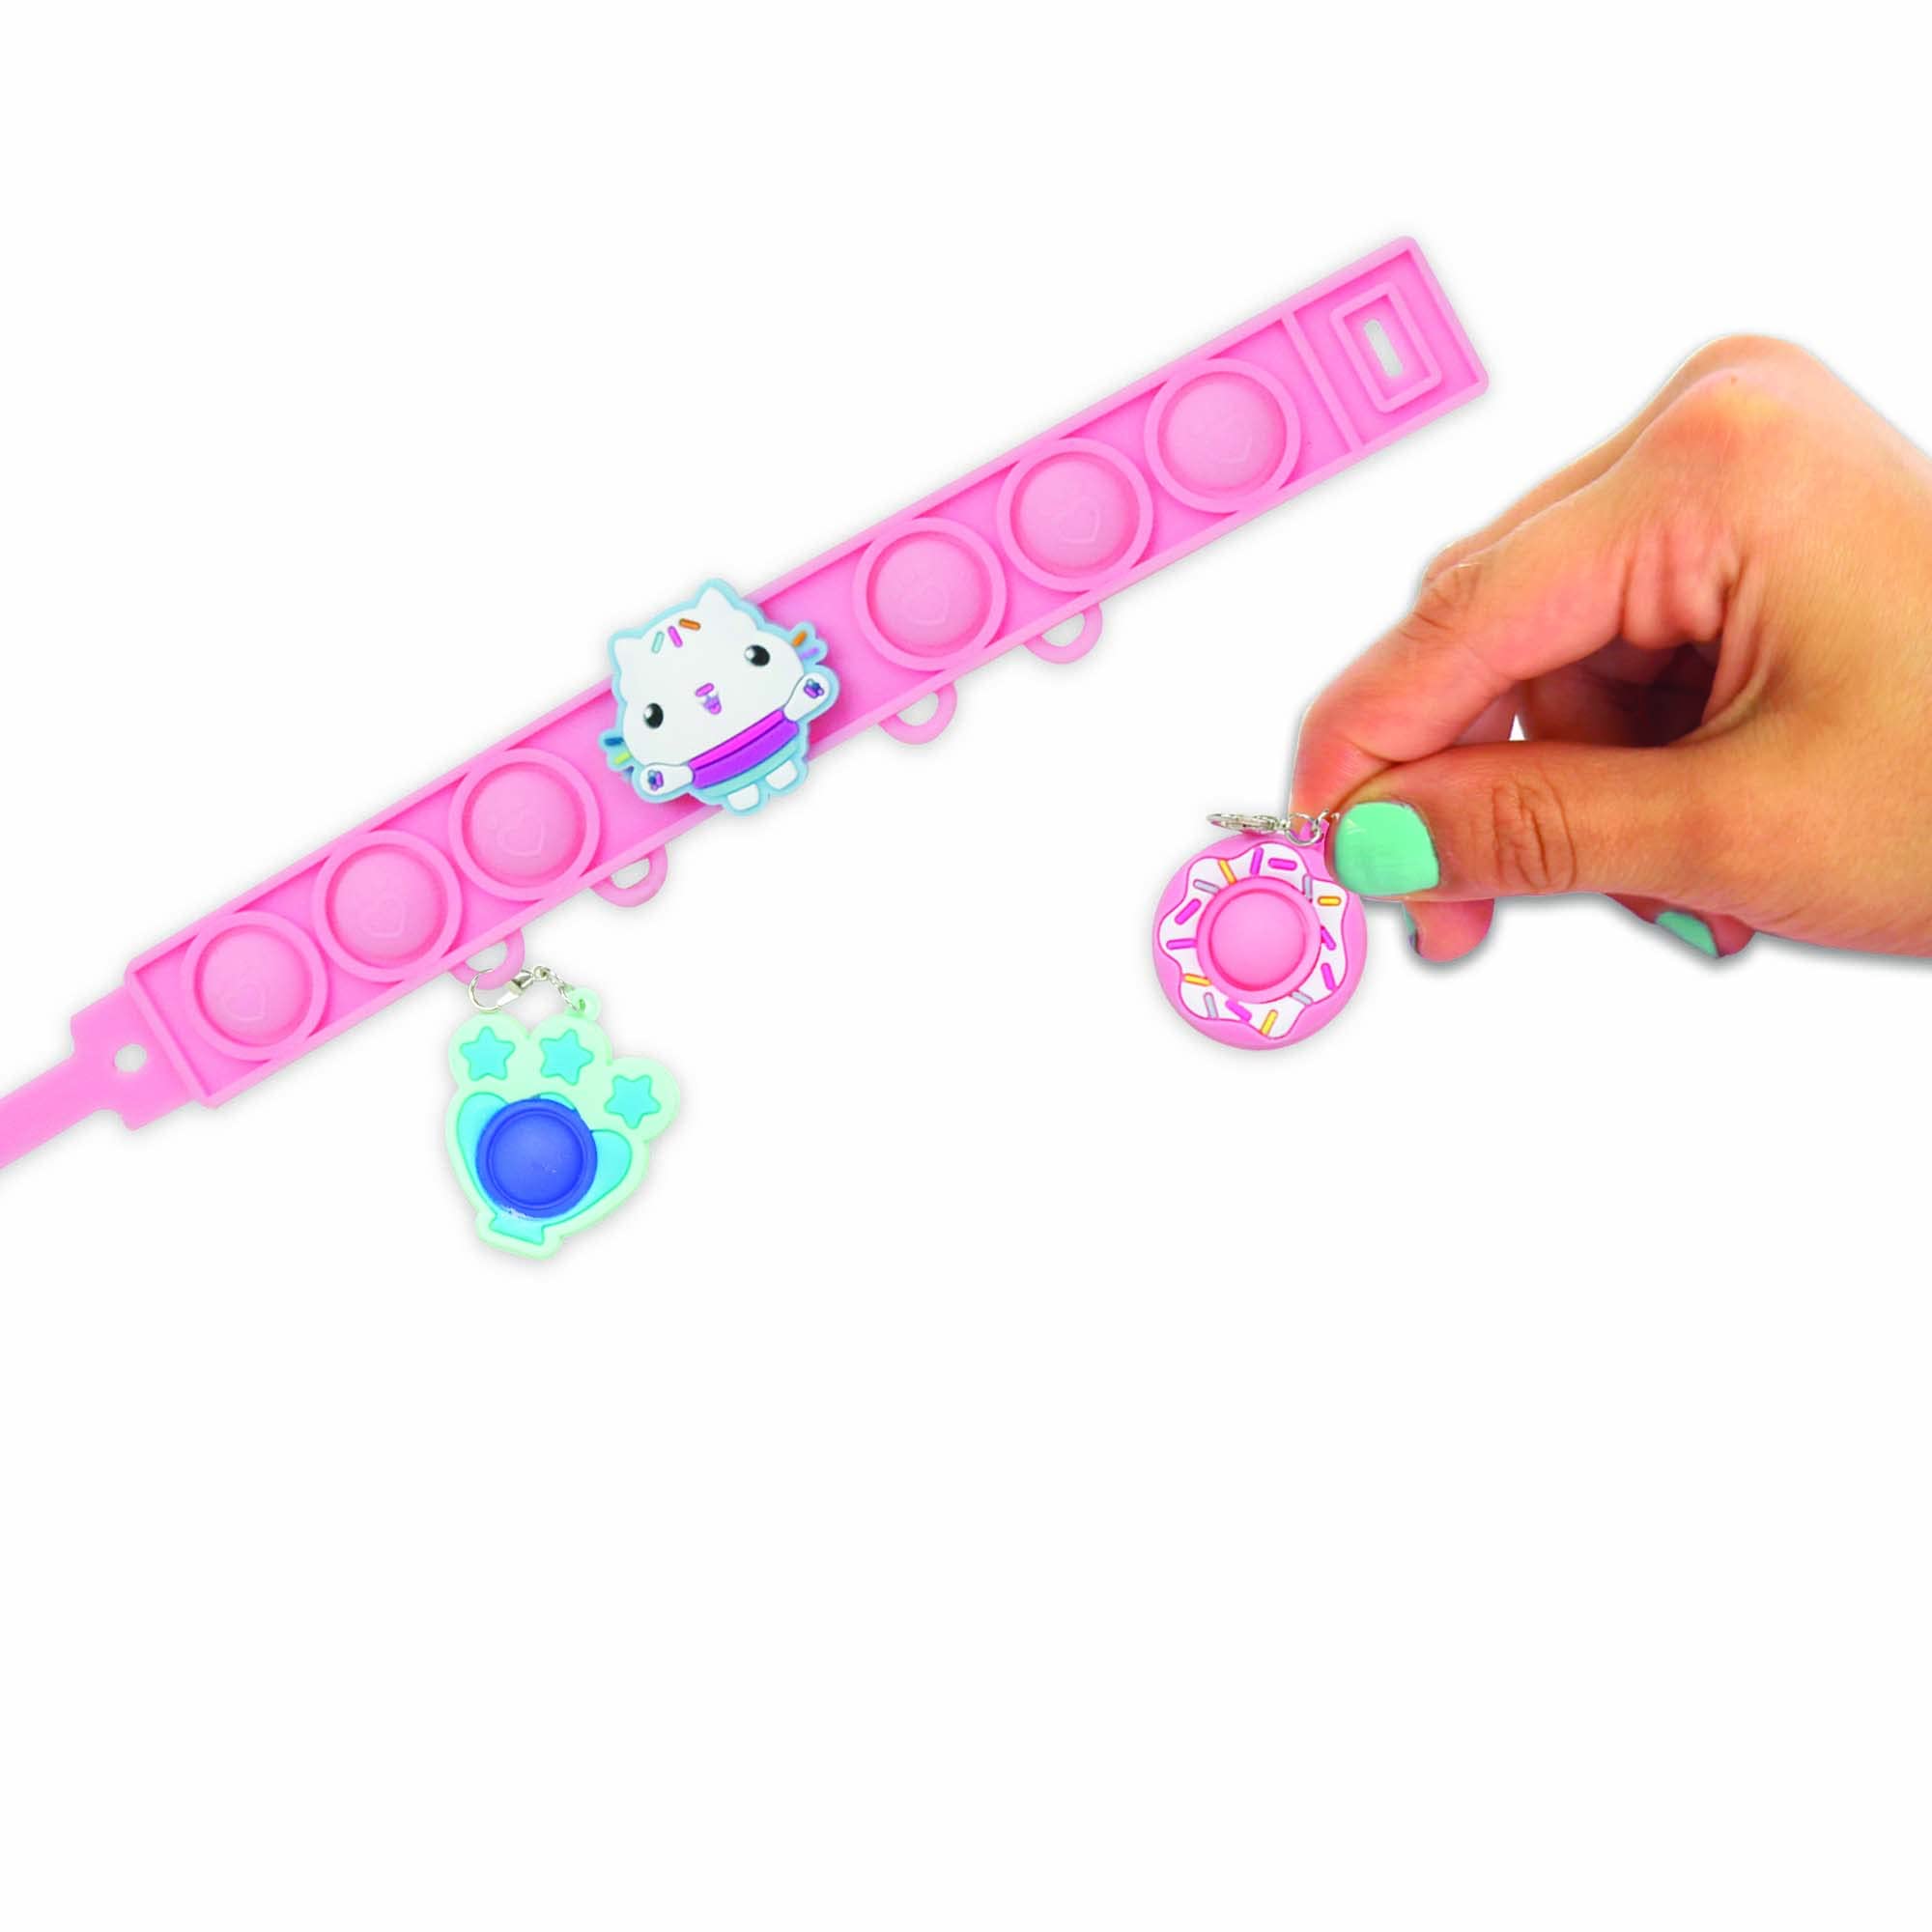 Tara Toys Pop-Eeze: Bracelet Activity Set - Gabby's Dollhouse - Jewelry Set, Popping Sensory Fun, Ages 3+